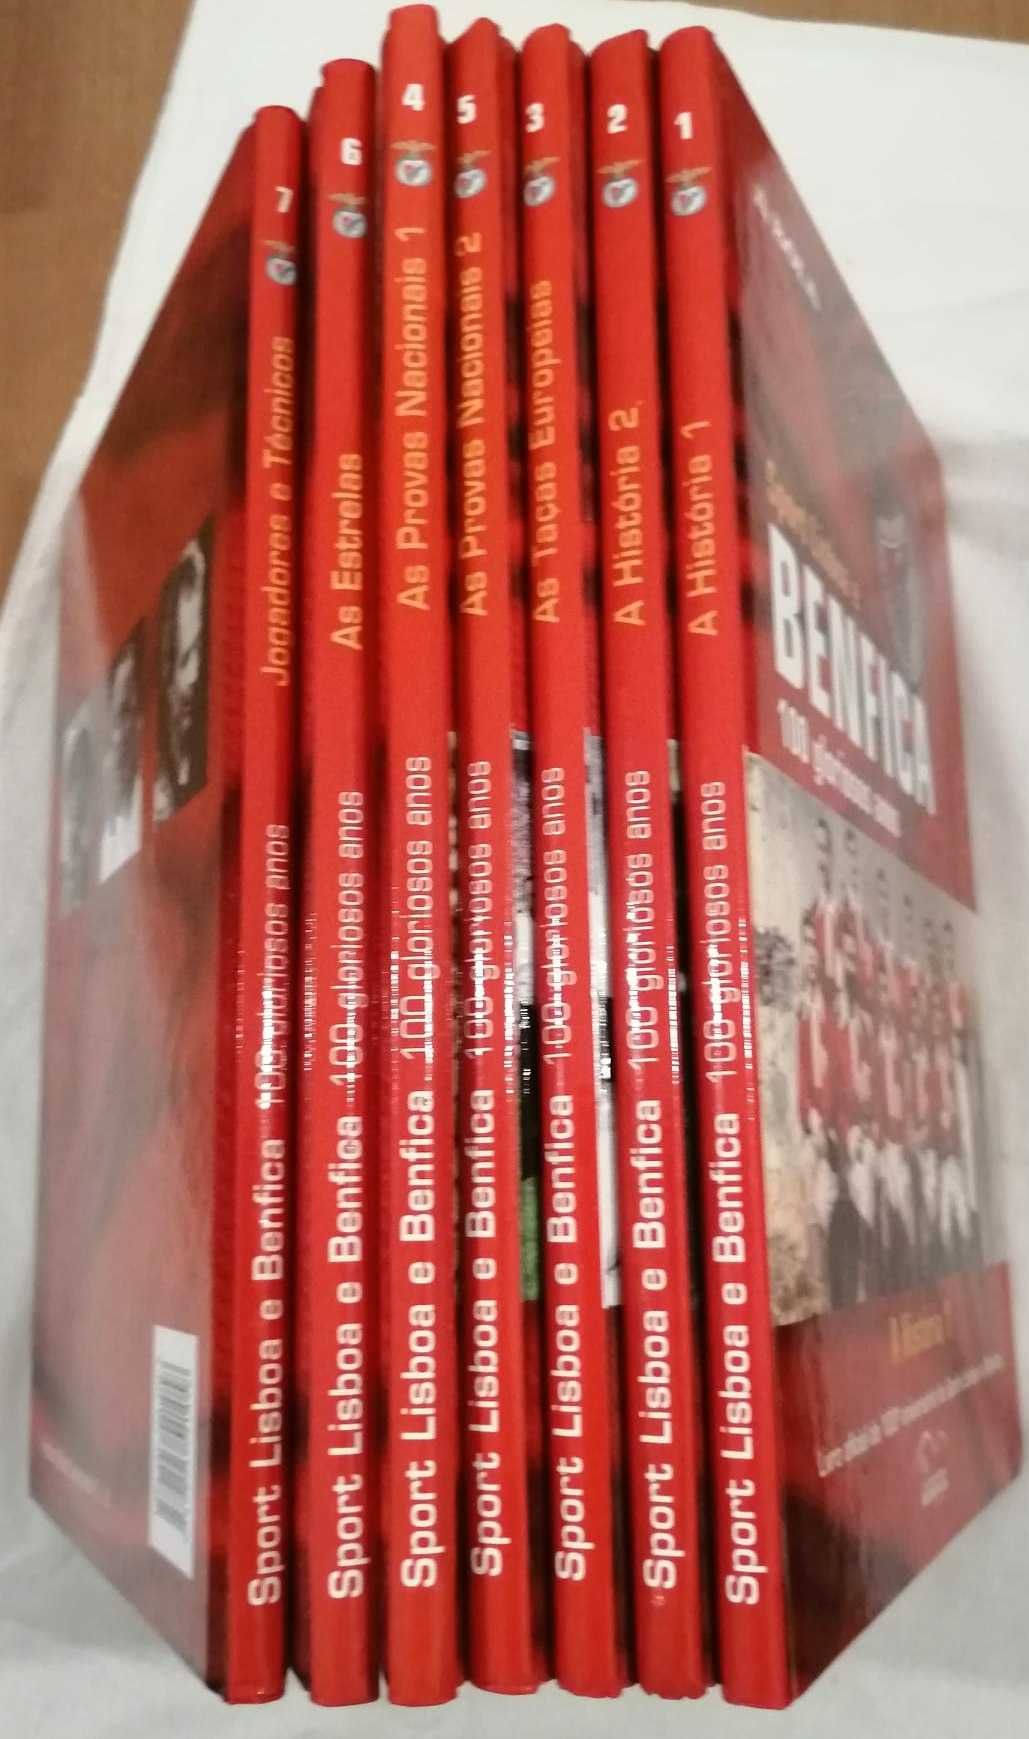 Sport Lisboa e Benfica  100 Gloriosos anos Colecção 7 Livros